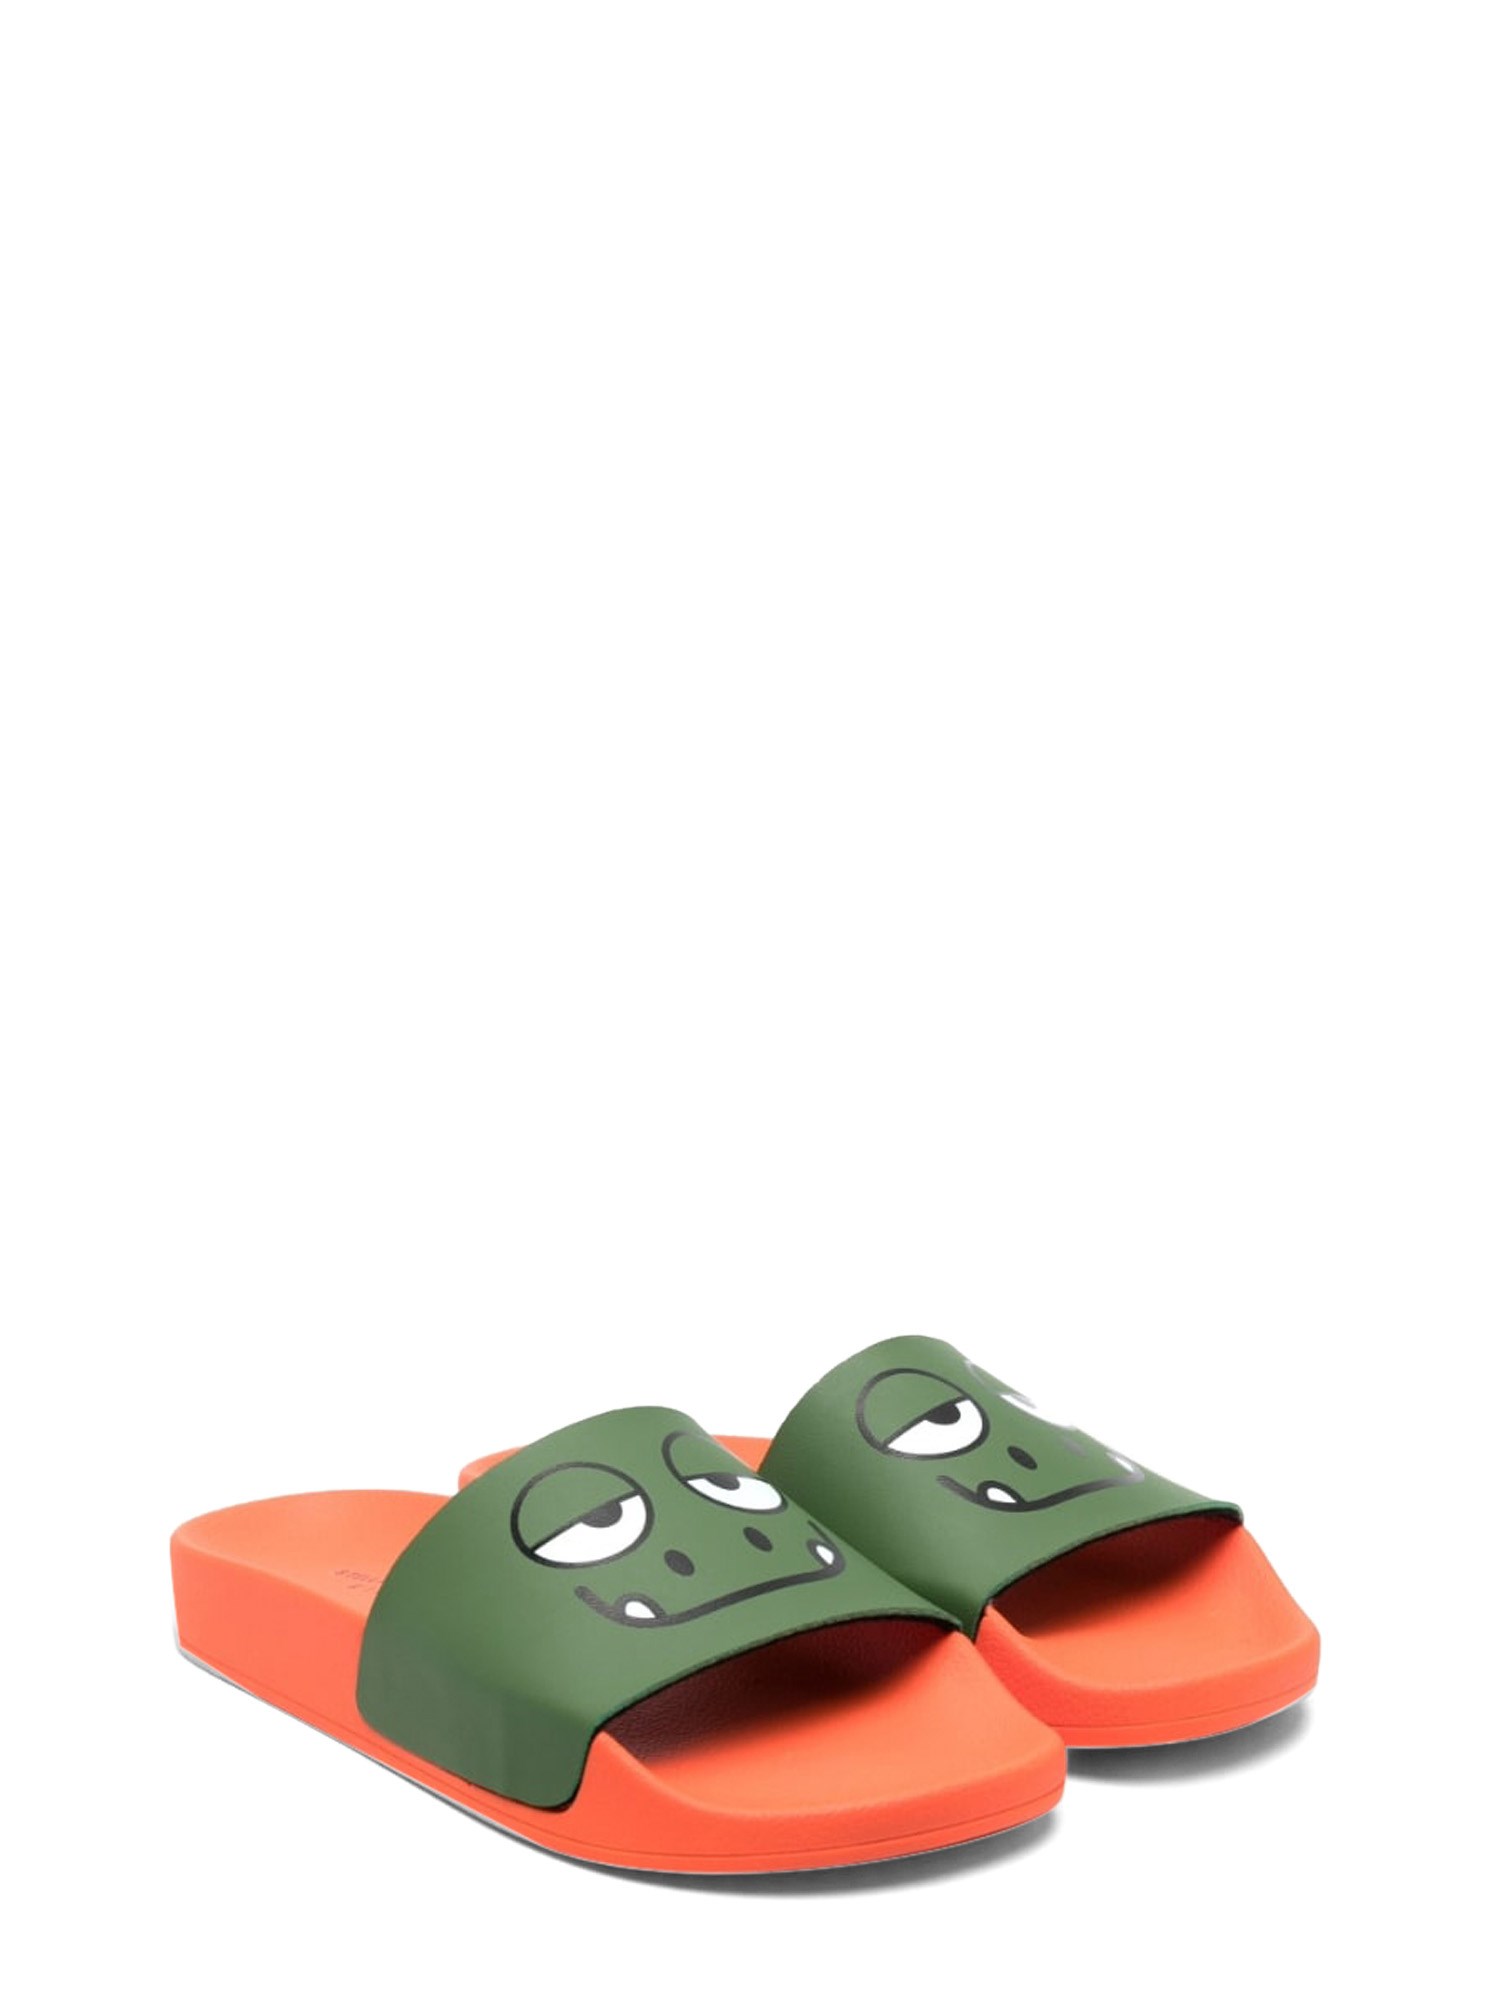 stella mccartney chameleon rubber slippers